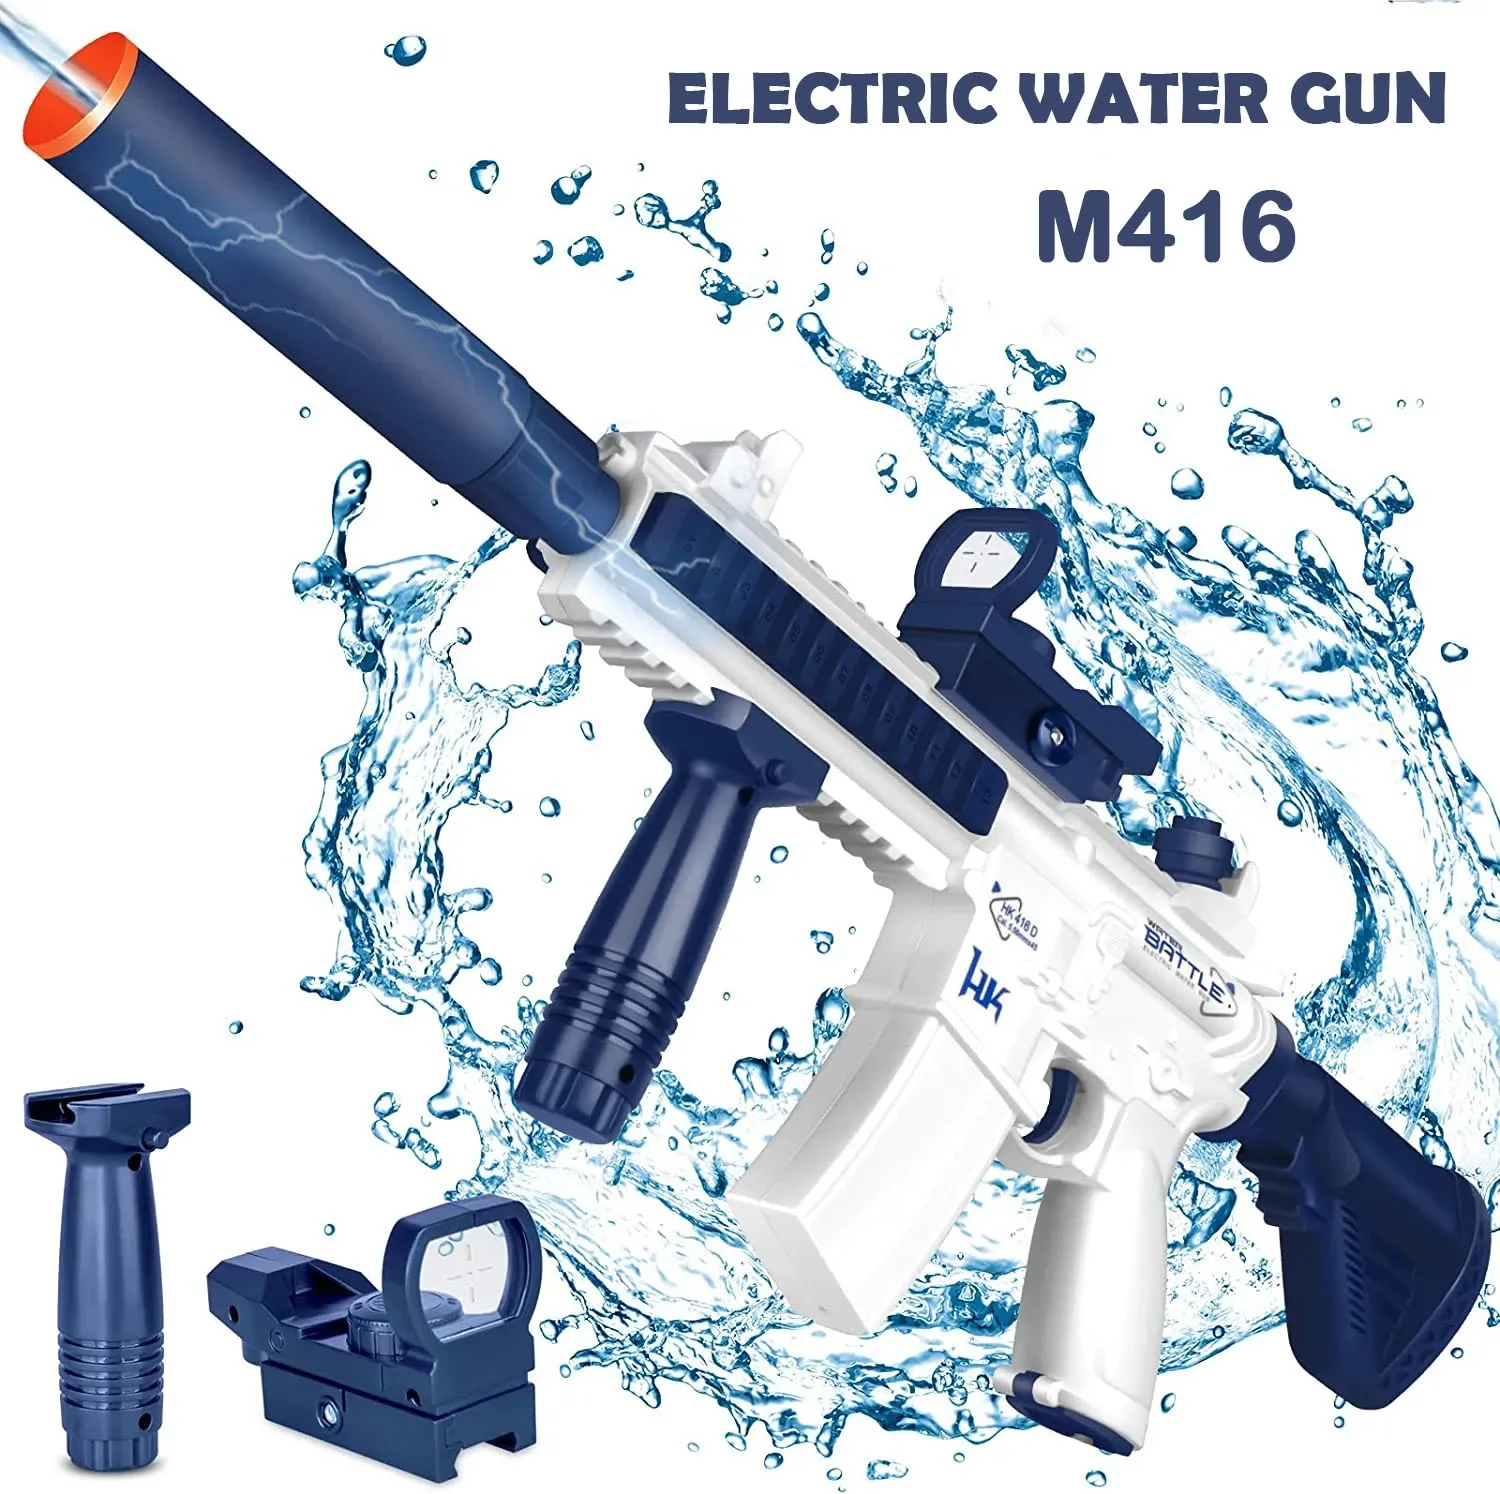 Sommer Outdoor-Schieß spiele kostenlose Demontage Kombination DIY Kinder neues Spielzeug gewehr M416 elektrische Hochgeschwindigkeits-Wasser pistole